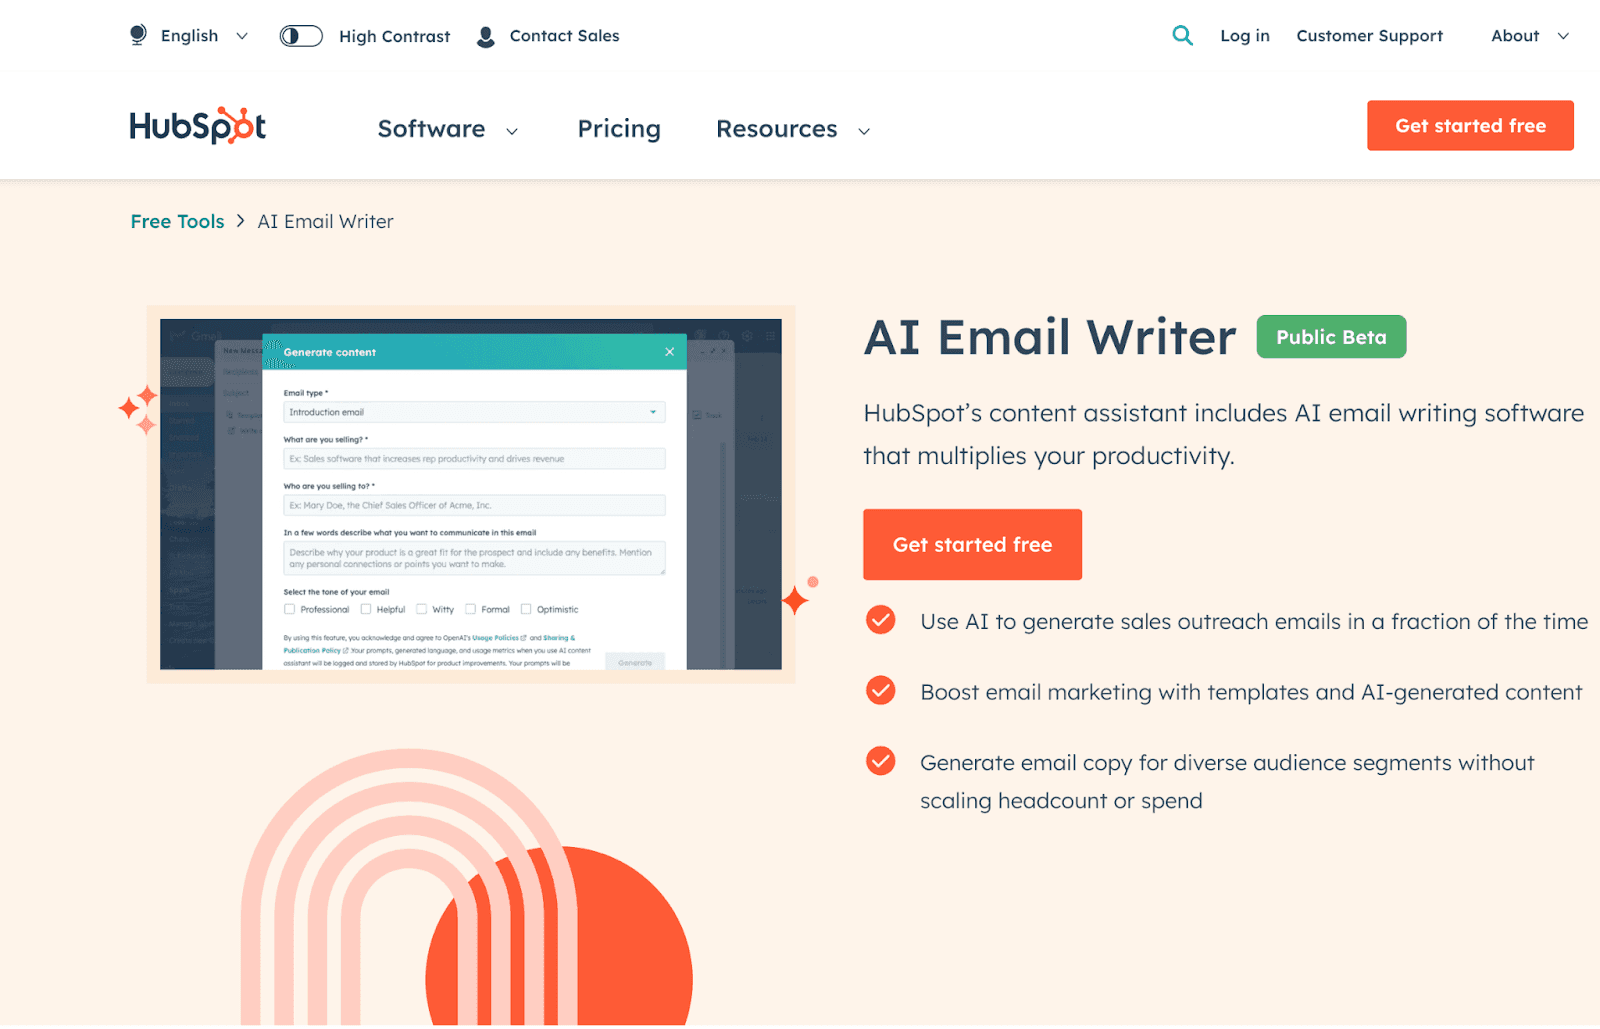 HubSpot's AI Email Writer website